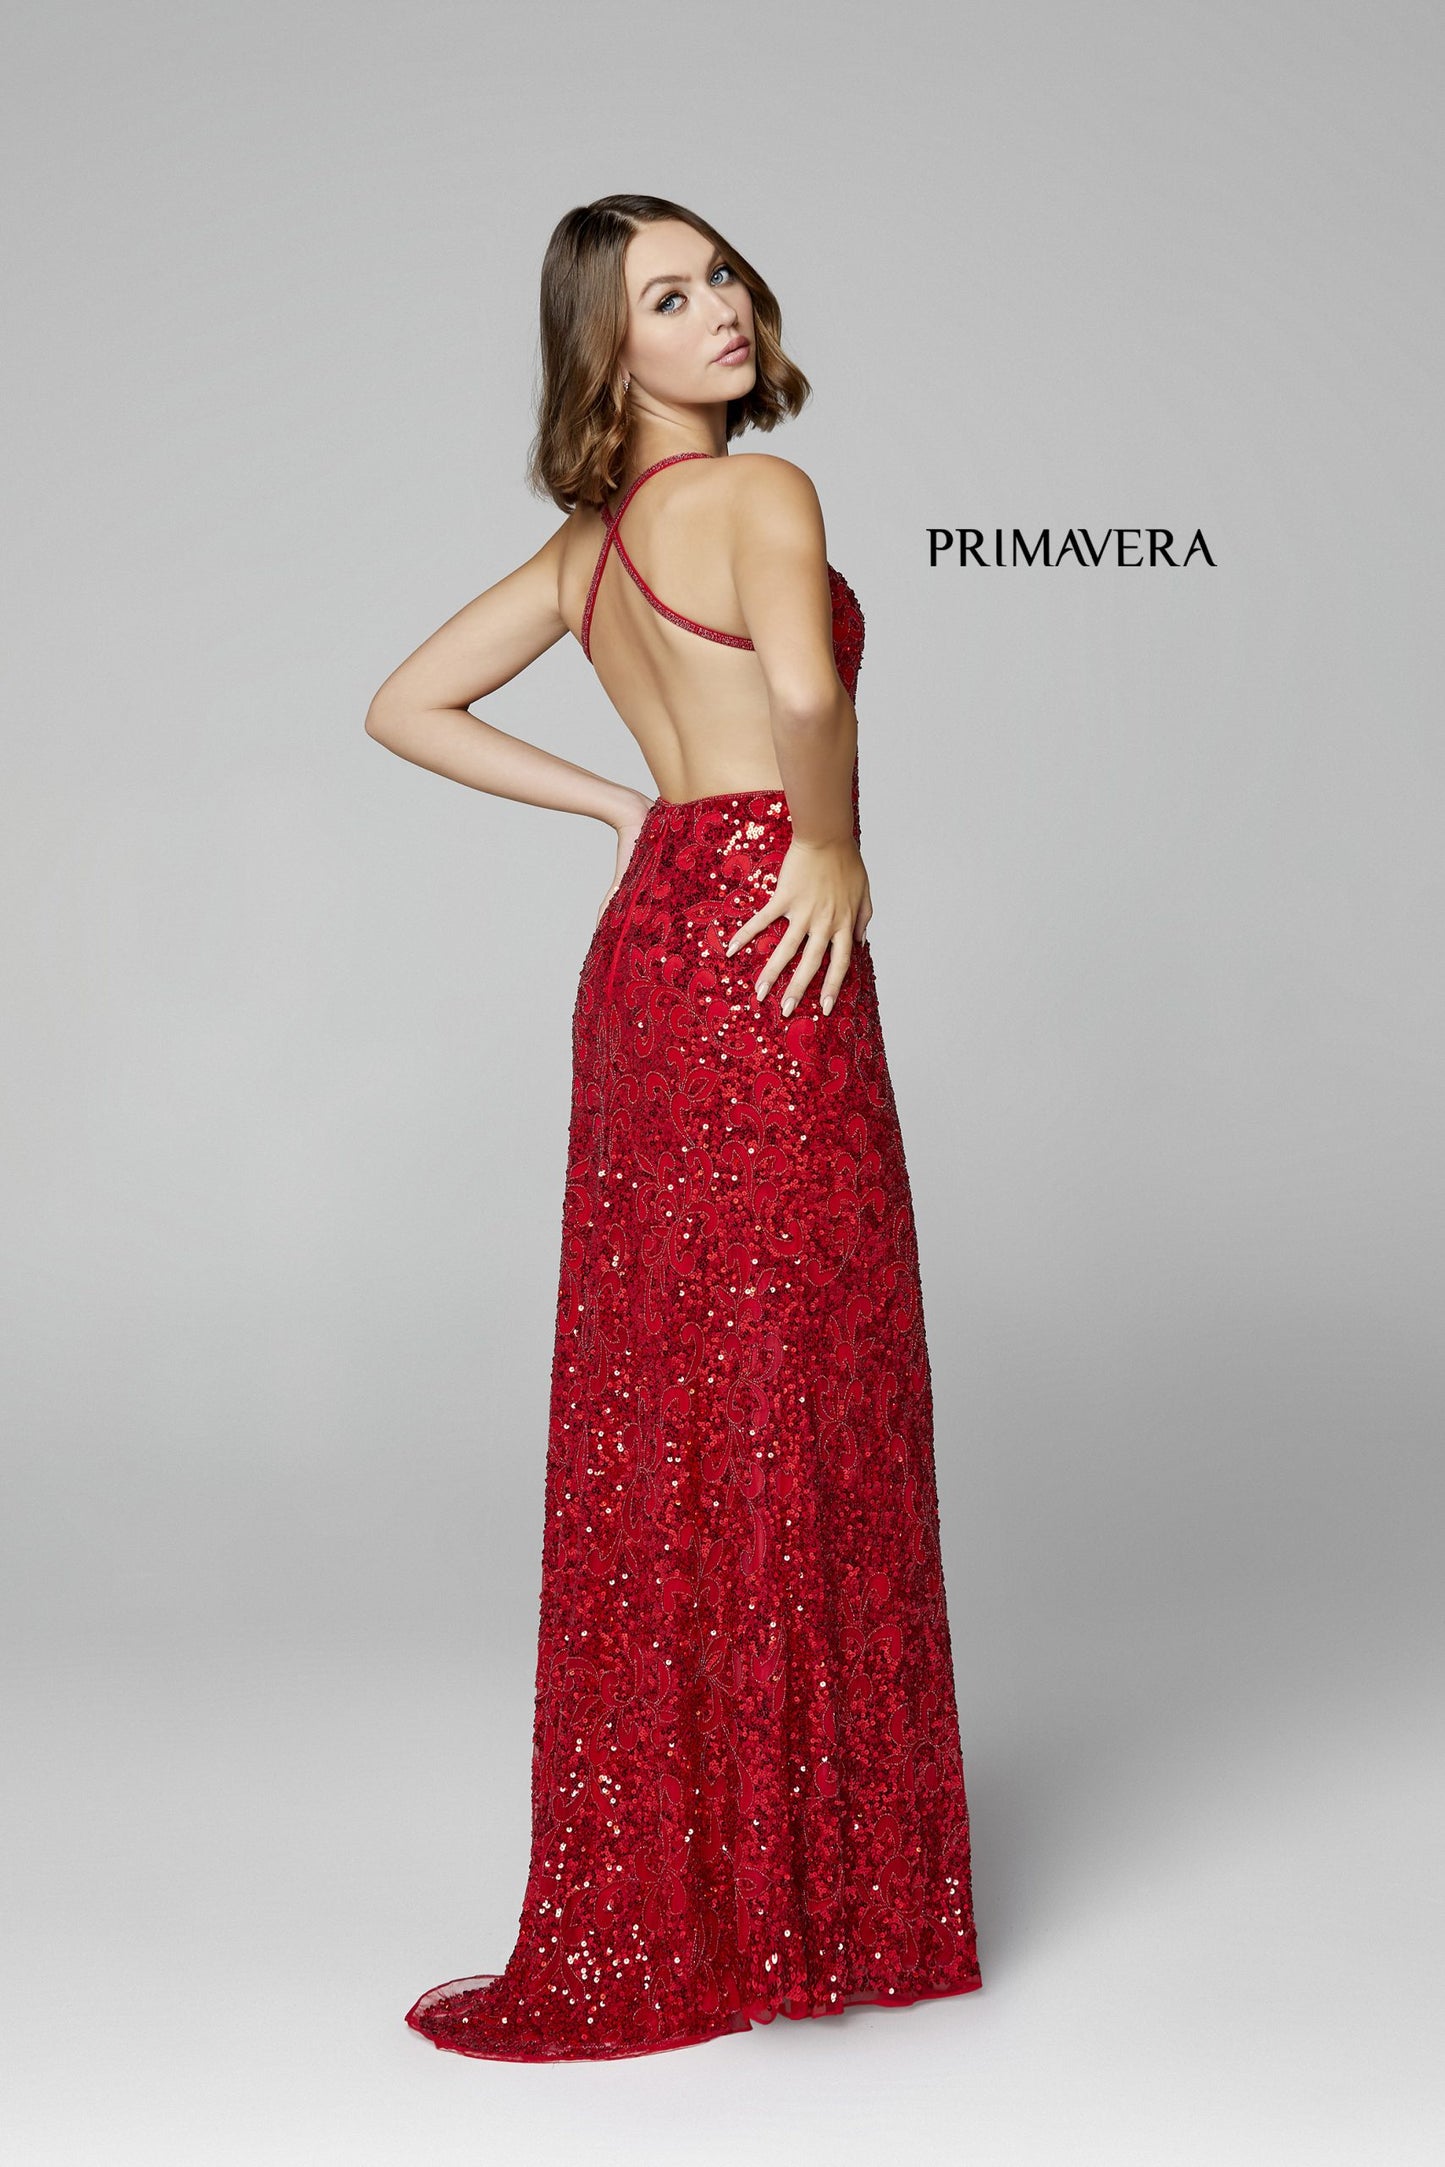 Primavera Couture 3295 Red Size 10 Prom Dress V Neckline Sequins Backless Slit Formal Evening Gown